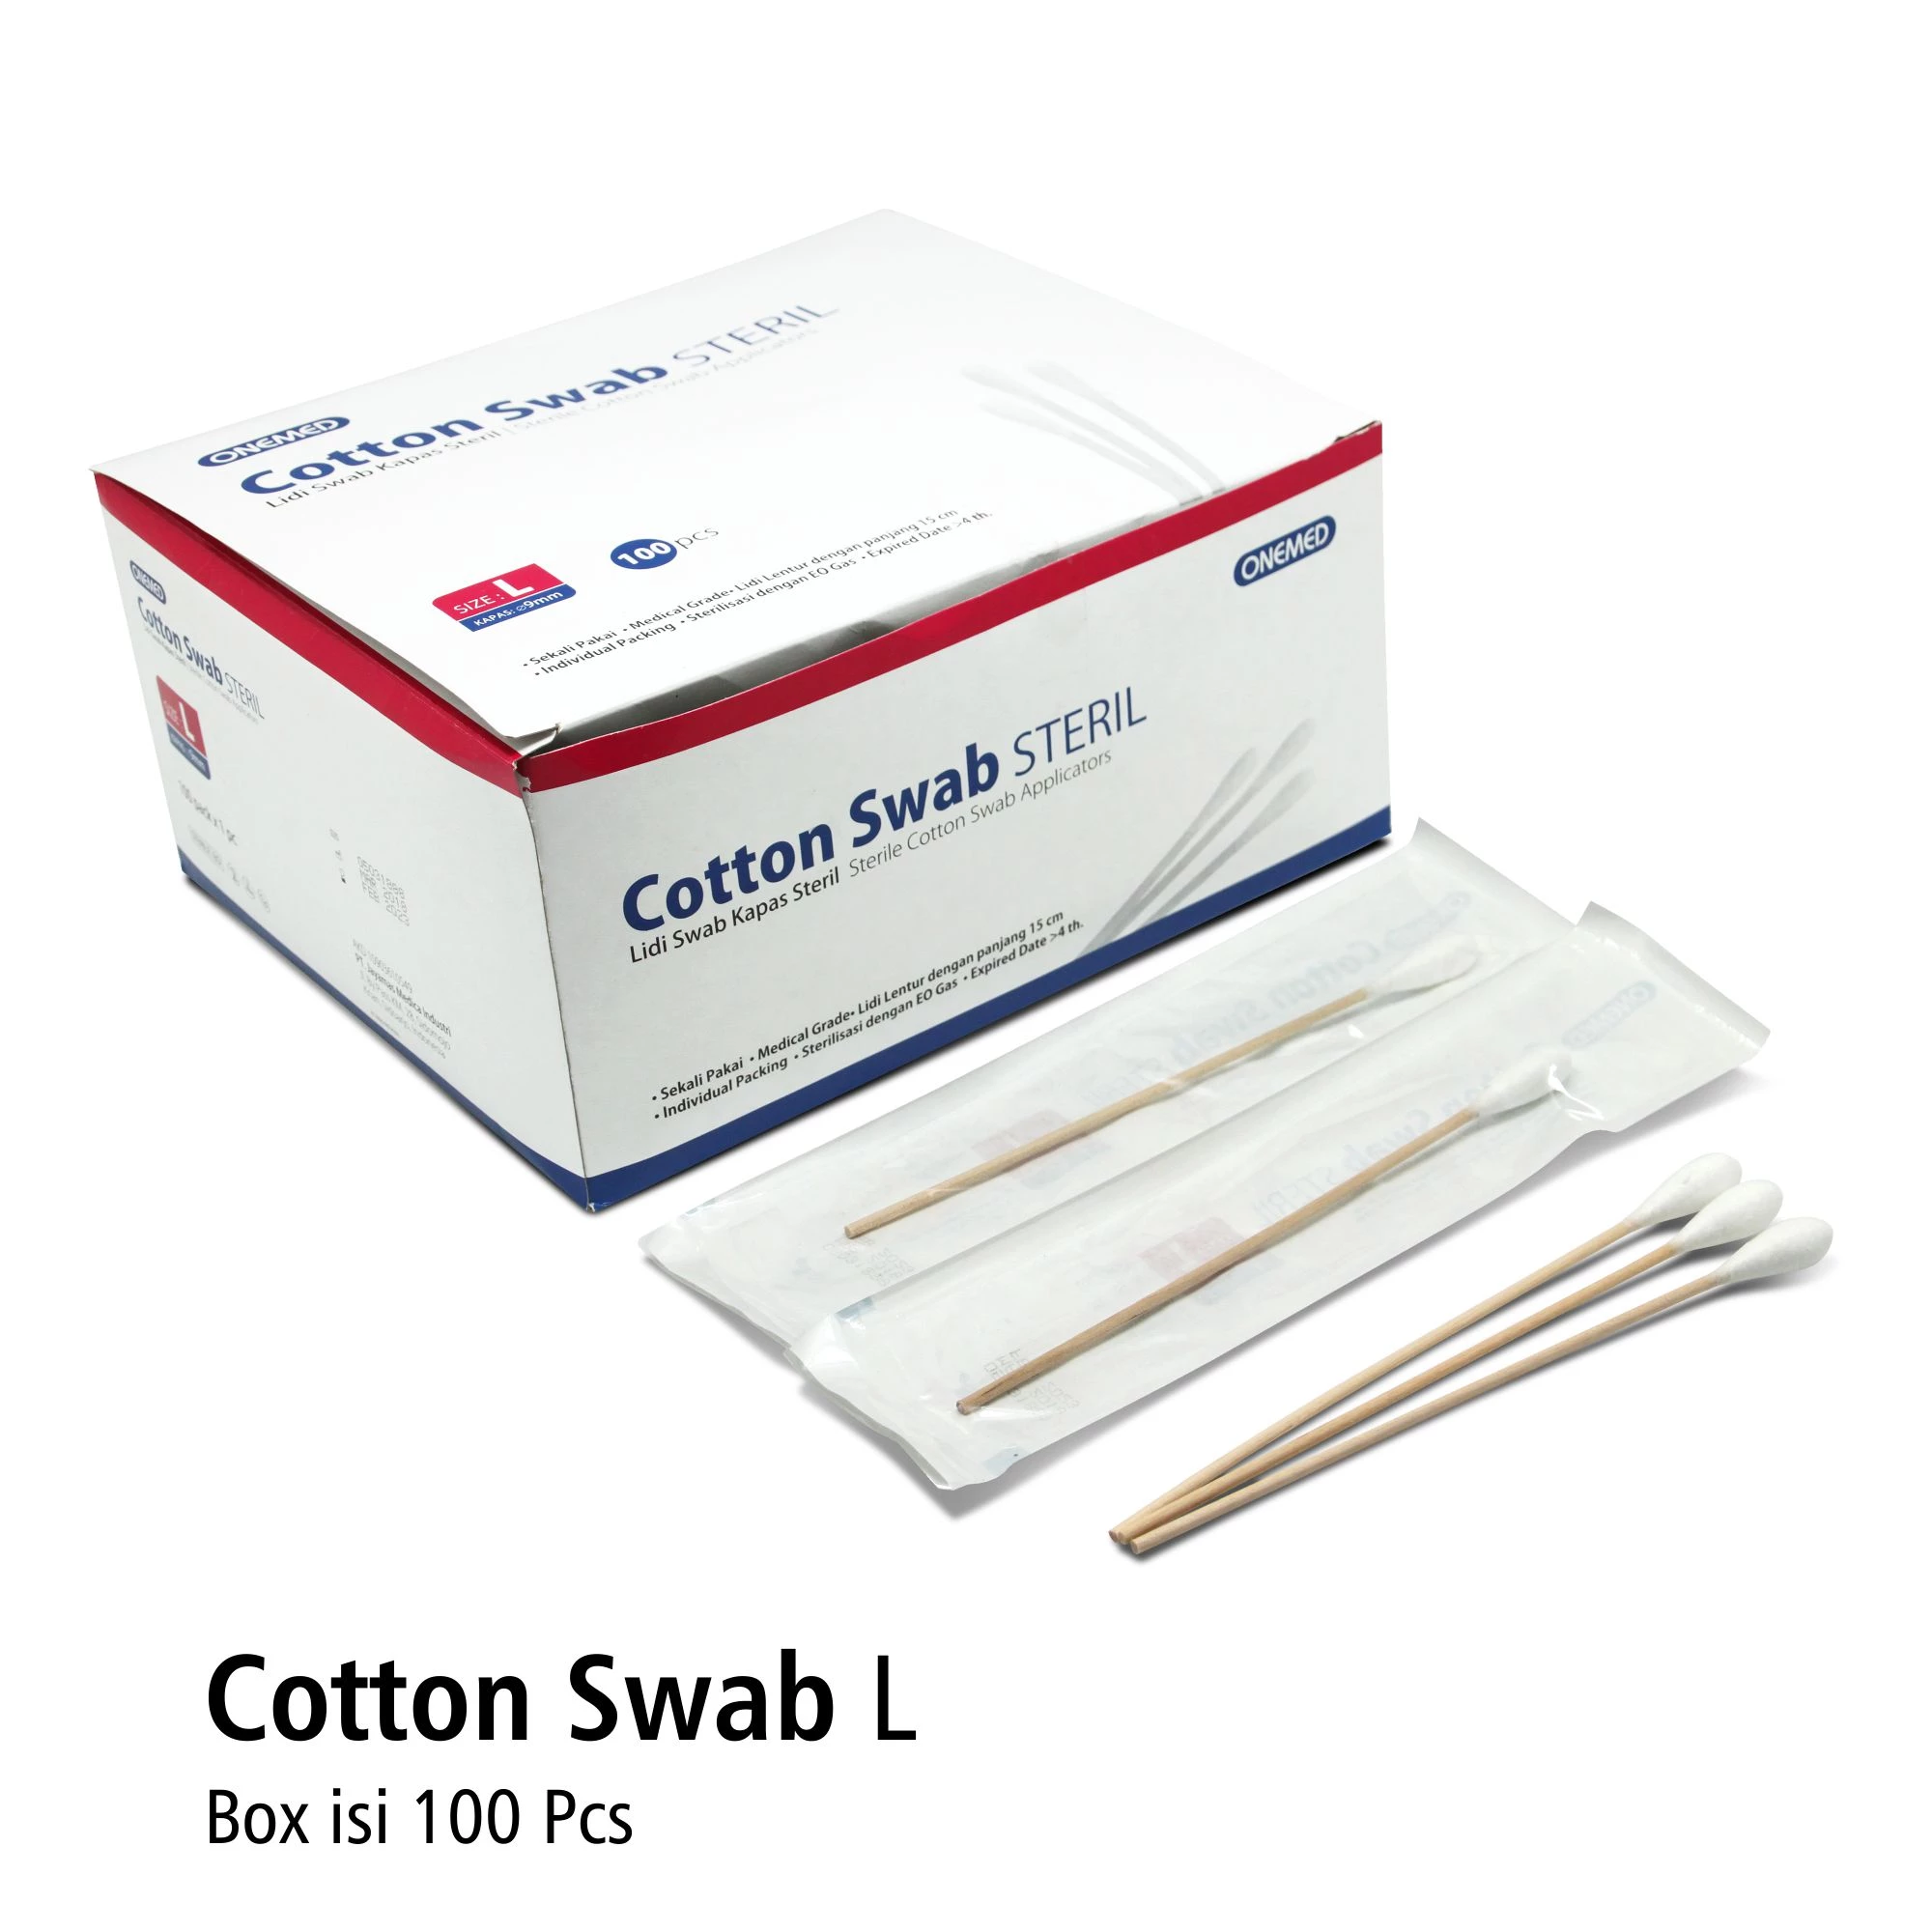 Cotton Swab Steril L isi 100pcs